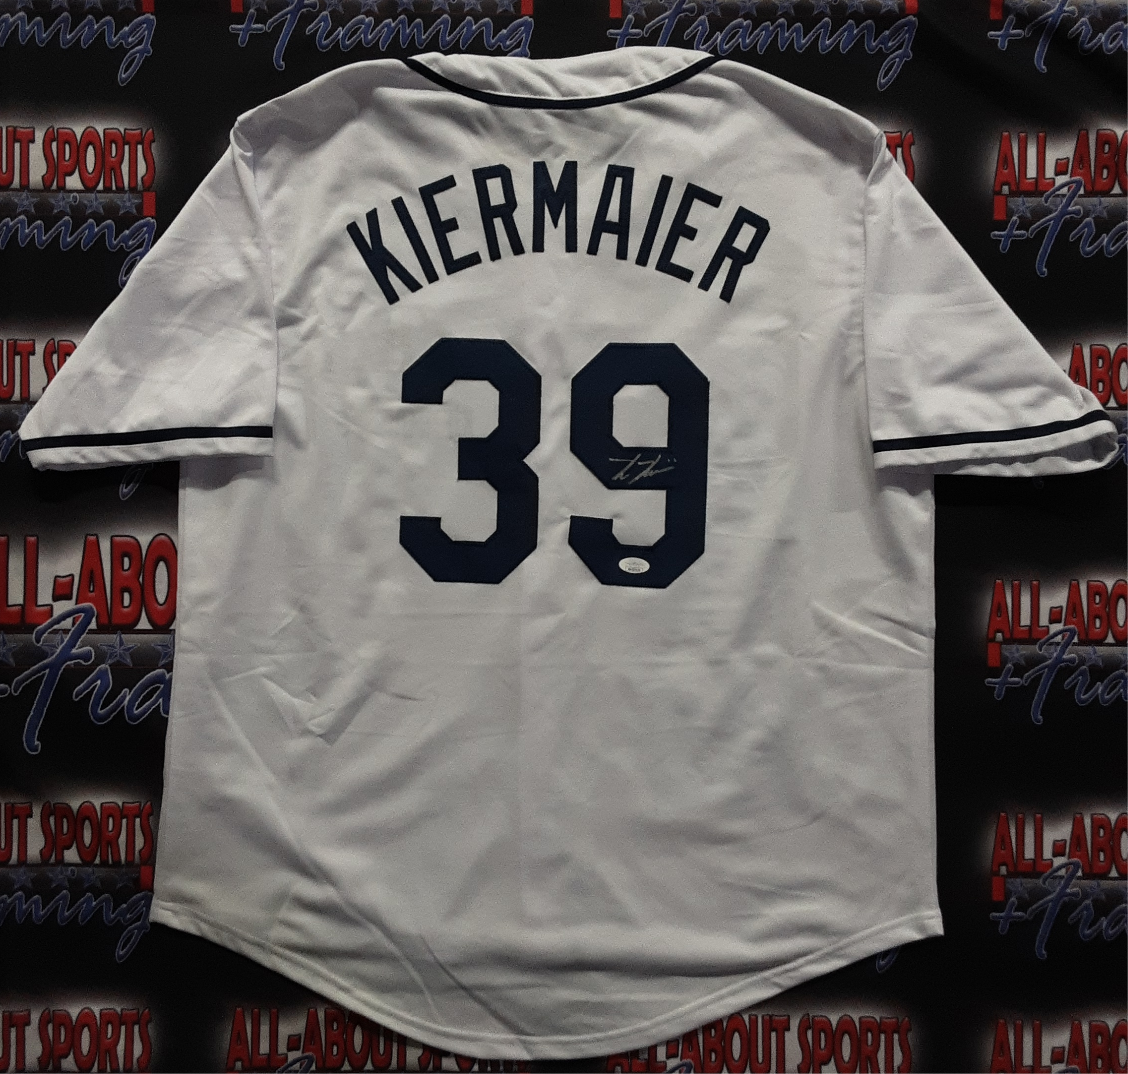 Kevin Kiermaier Signed Pro Style Jersey Autographed JSA